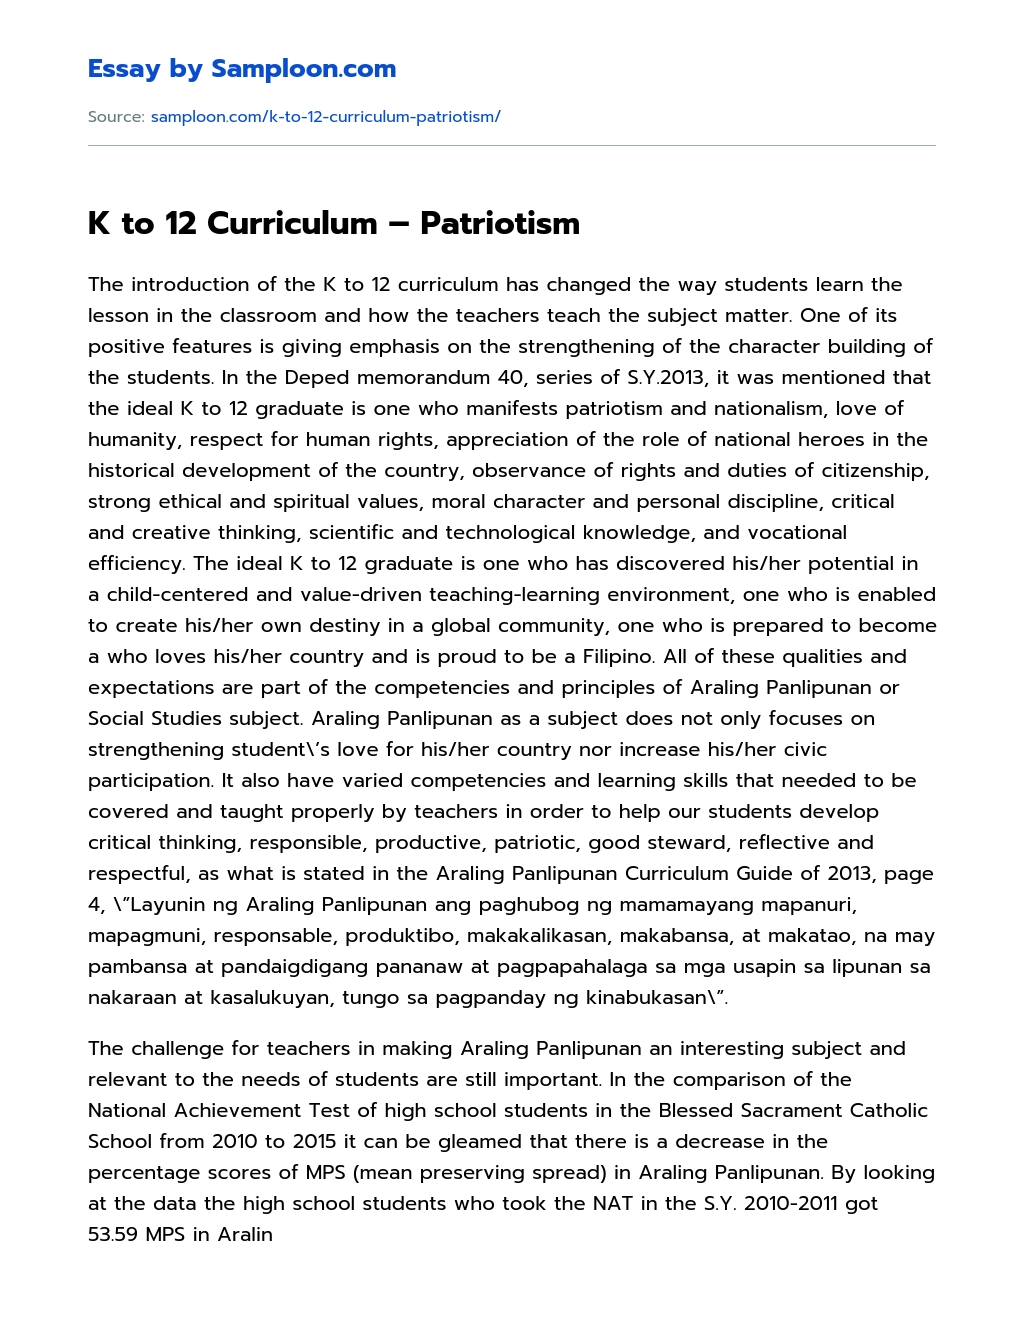 K to 12 Curriculum – Patriotism Research Paper essay